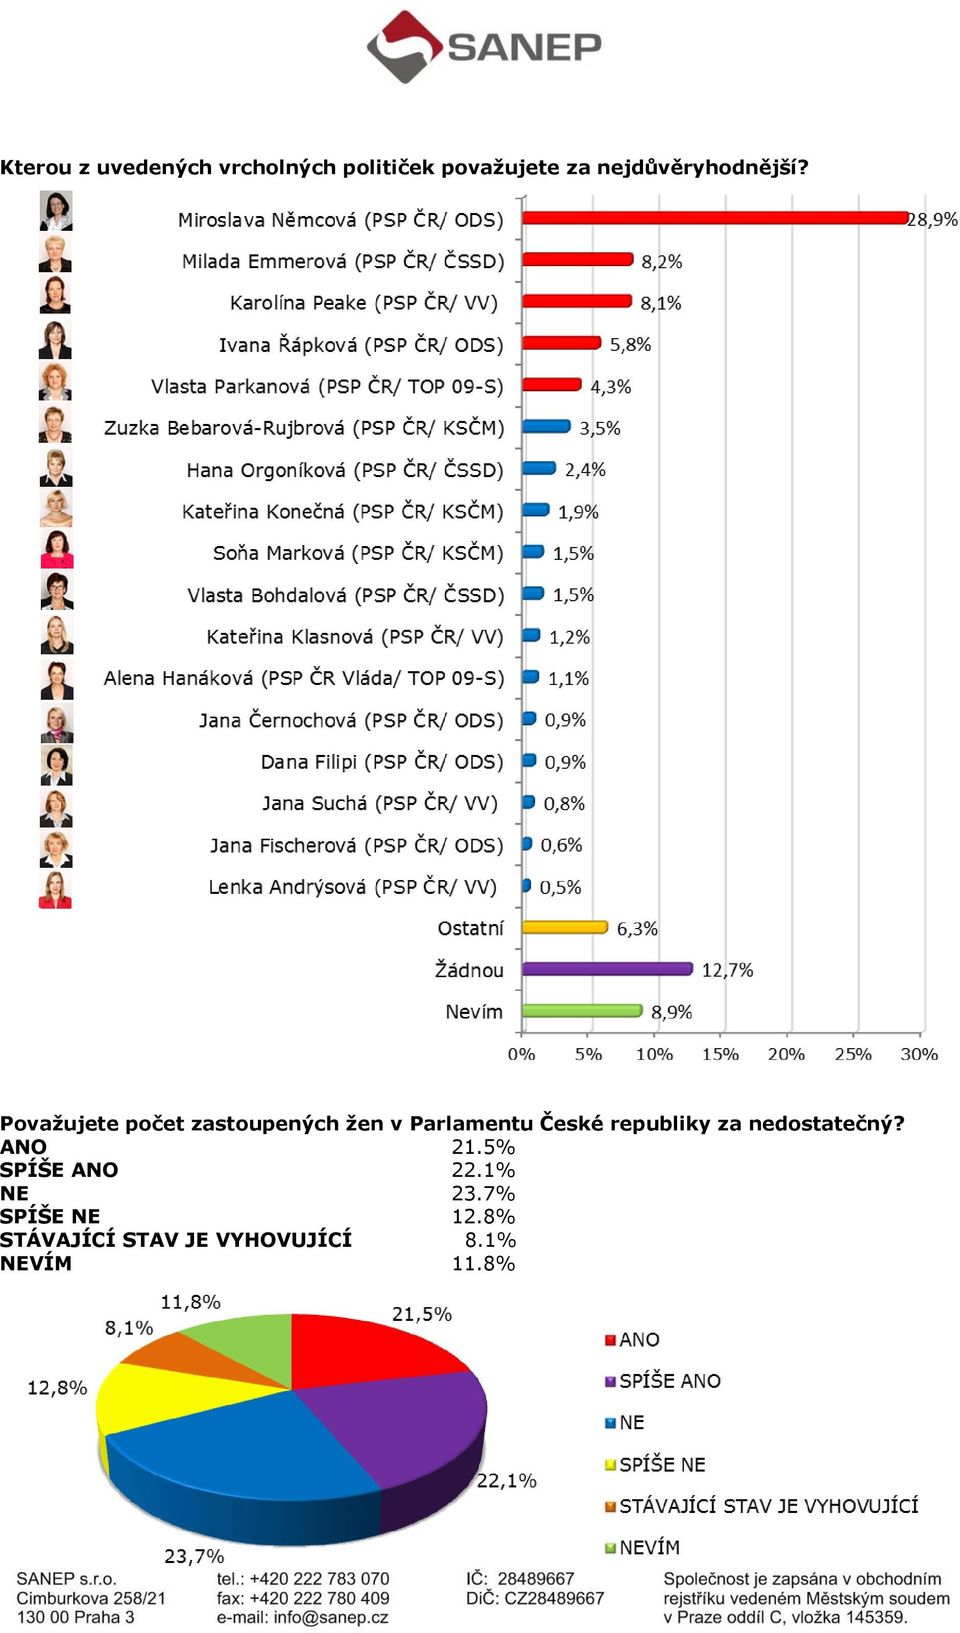 Považujete počet zastoupených žen v Parlamentu České